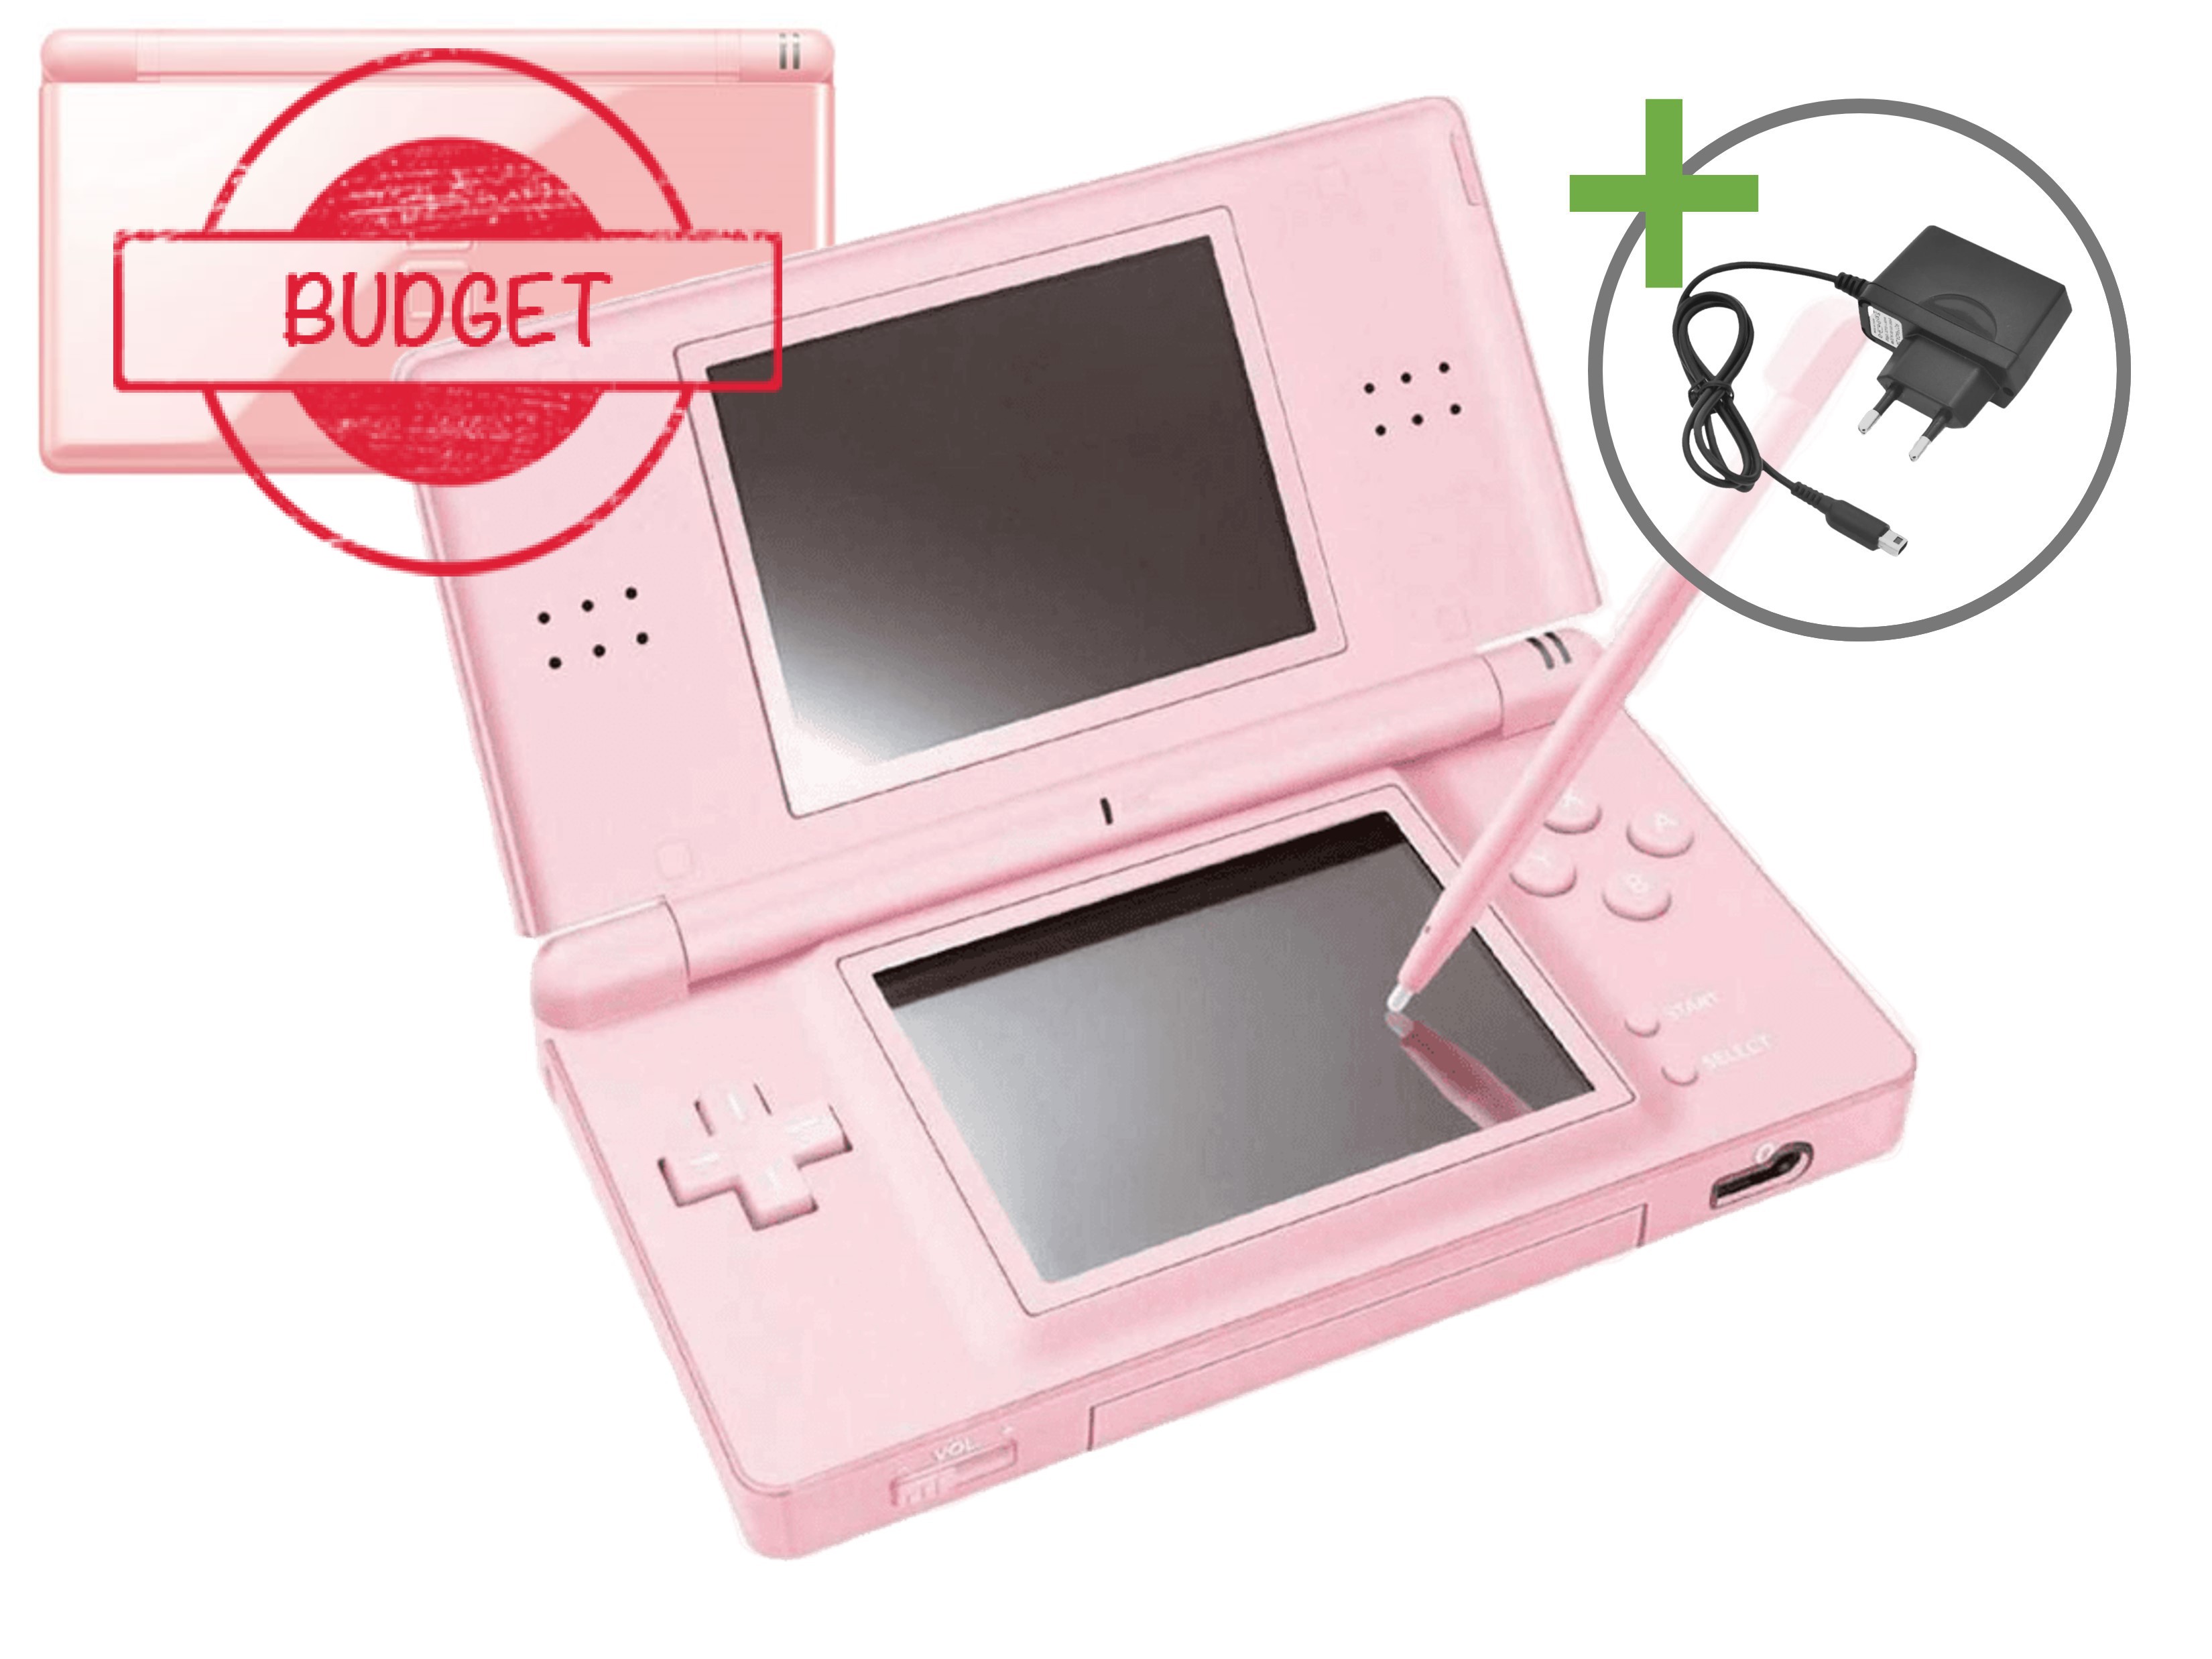 Nintendo DS Lite Pink - Budget Kopen | Nintendo DS Hardware